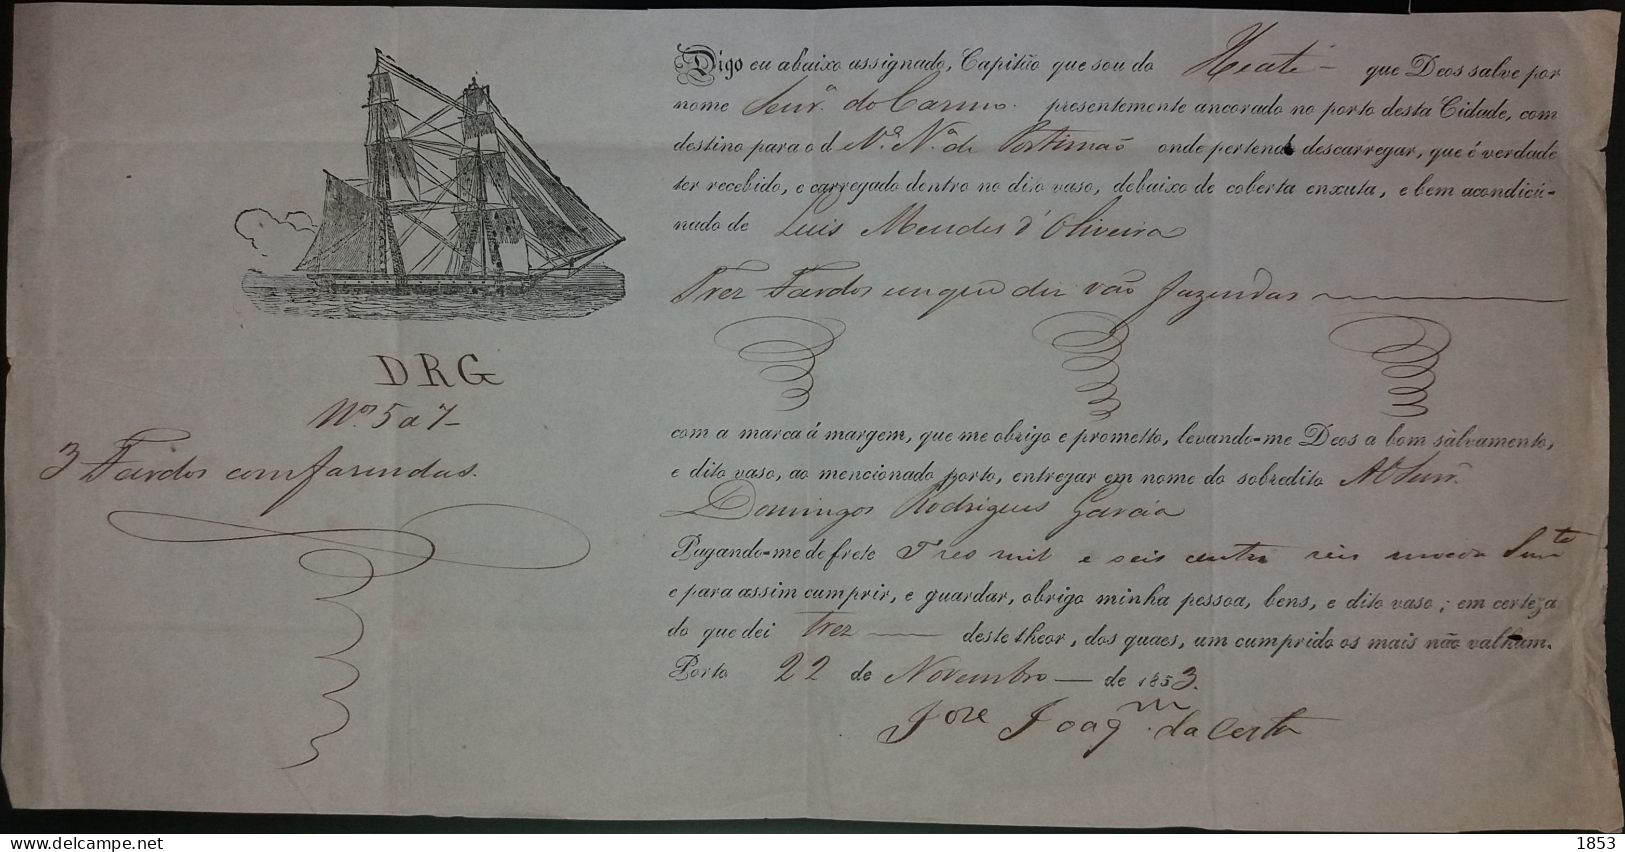 CORREIO MARITIMO - CONHECIMENTO DE EMBARQUE - 22 NOV 1853 - Covers & Documents